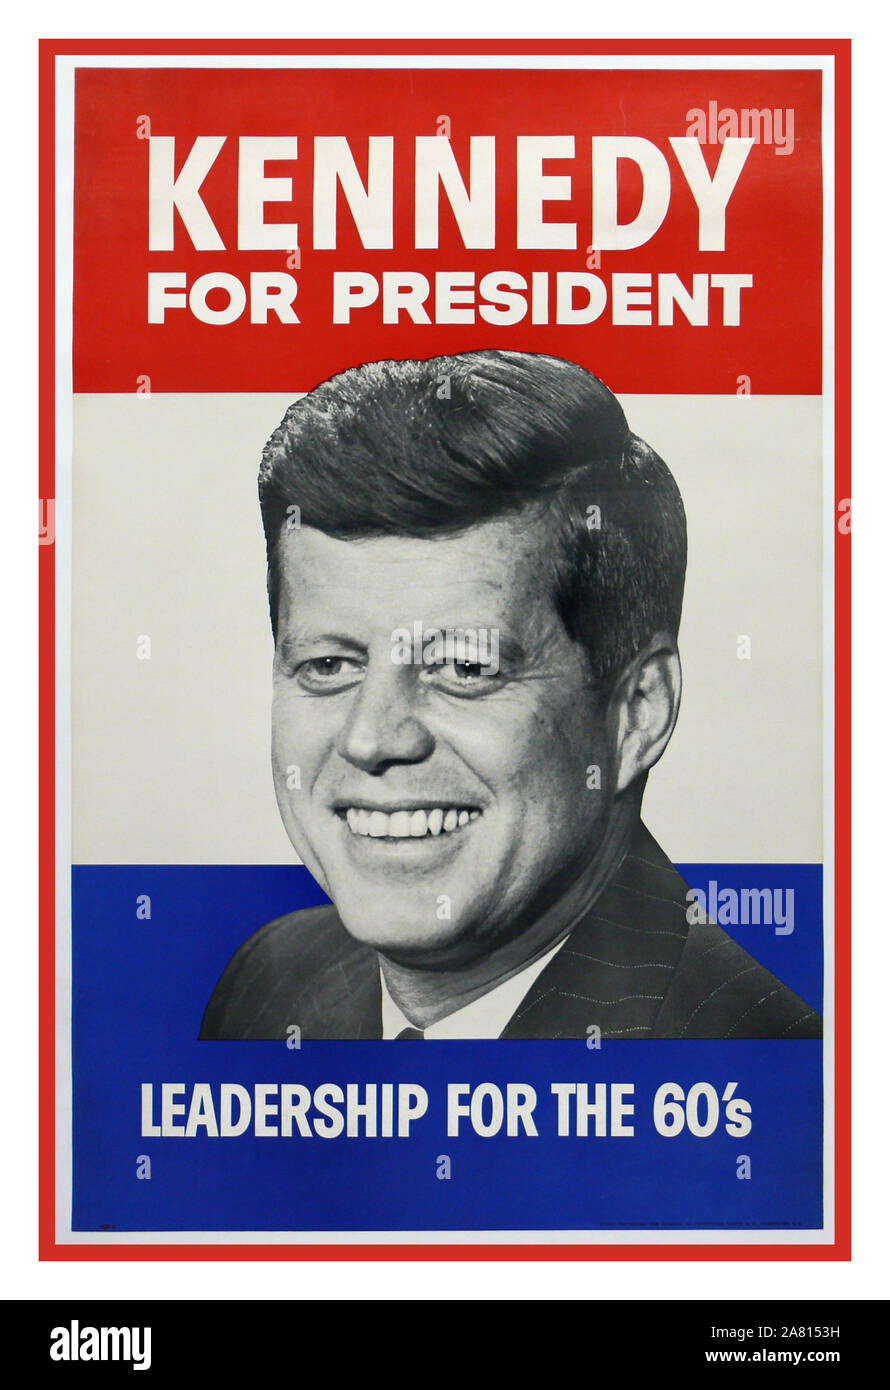 KENNEDY JFK Poster electoral Vintage USA 1960 John F. Kennedy 1960 Poster de la Campaña Presidencial...'Kennedy por el liderazgo del Presidente para los años 60 la inauguración de John F Kennedy tuvo lugar el 20 de enero de 1961, en el recientemente renovado frente este del Capitolio de los Estados Unidos, John Fitzgerald Kennedy fue inaugurado como el 35º presidente de los Estados Unidos. Foto de stock